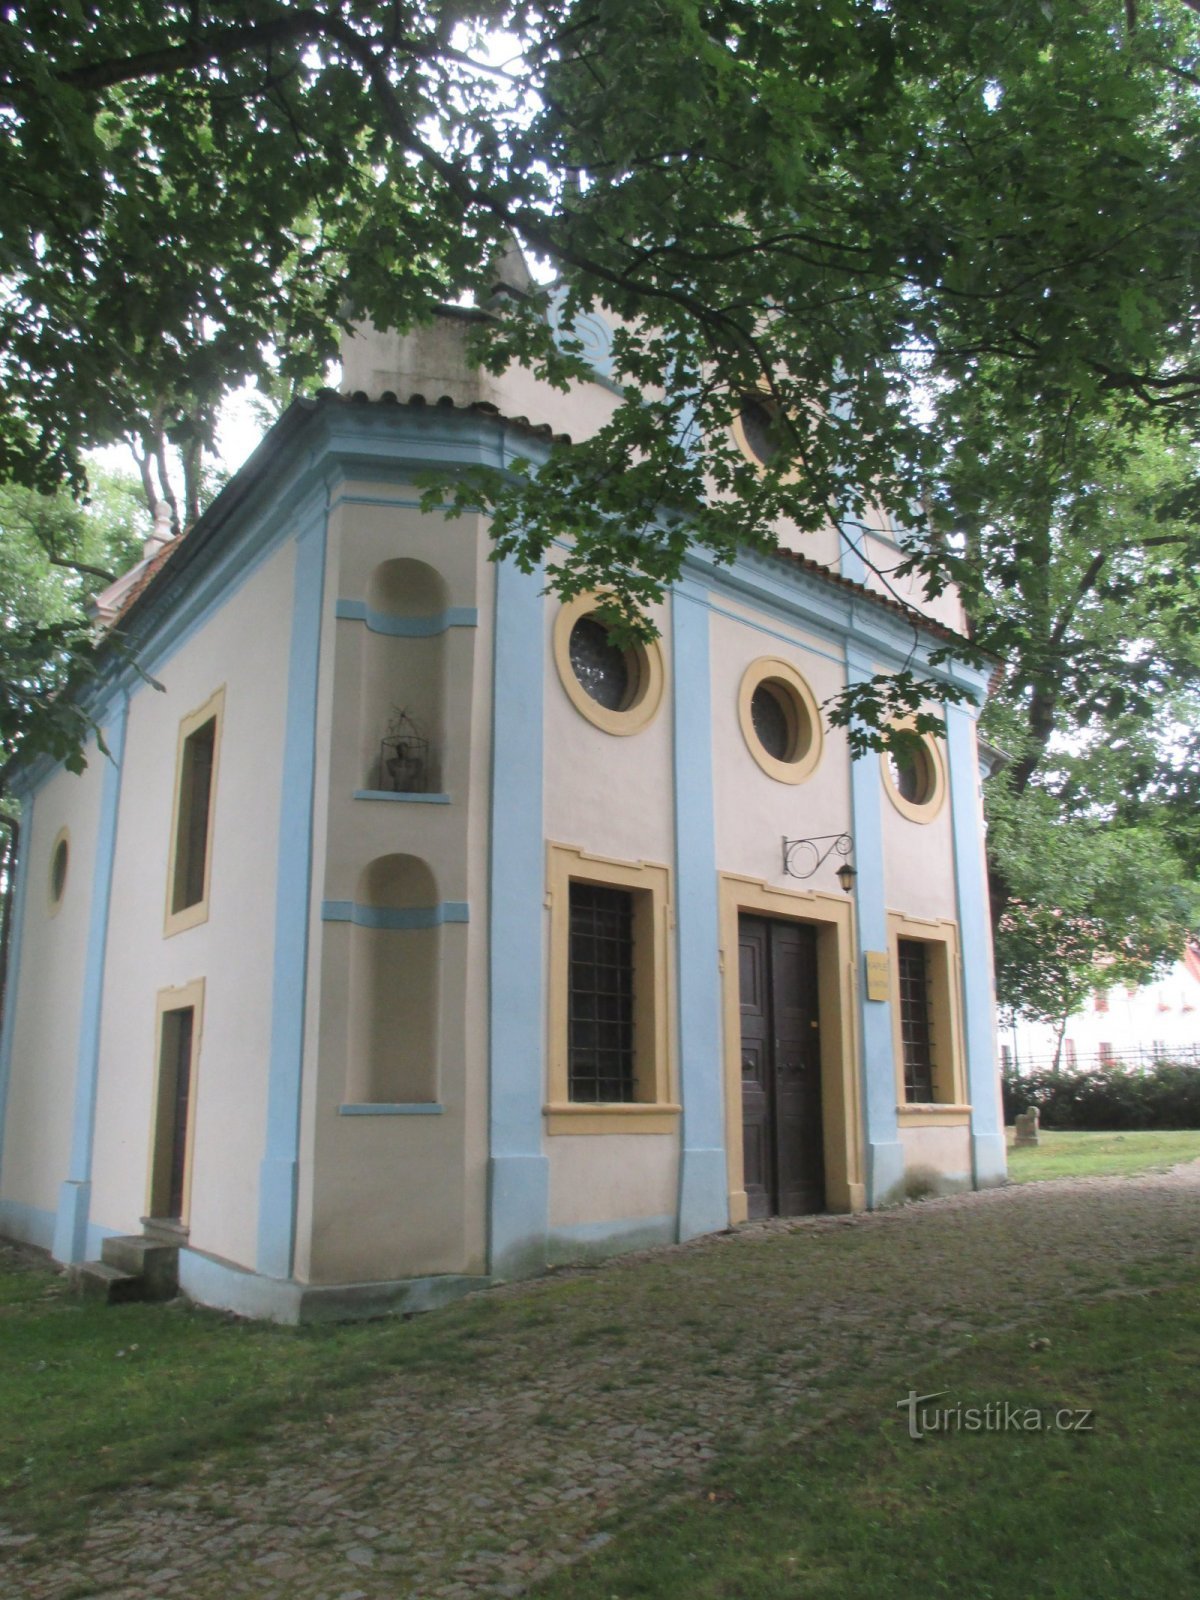 Εκκλησία του Αγ. Ο Μάρτιν στο Τσέσκι Κρούμλοβ